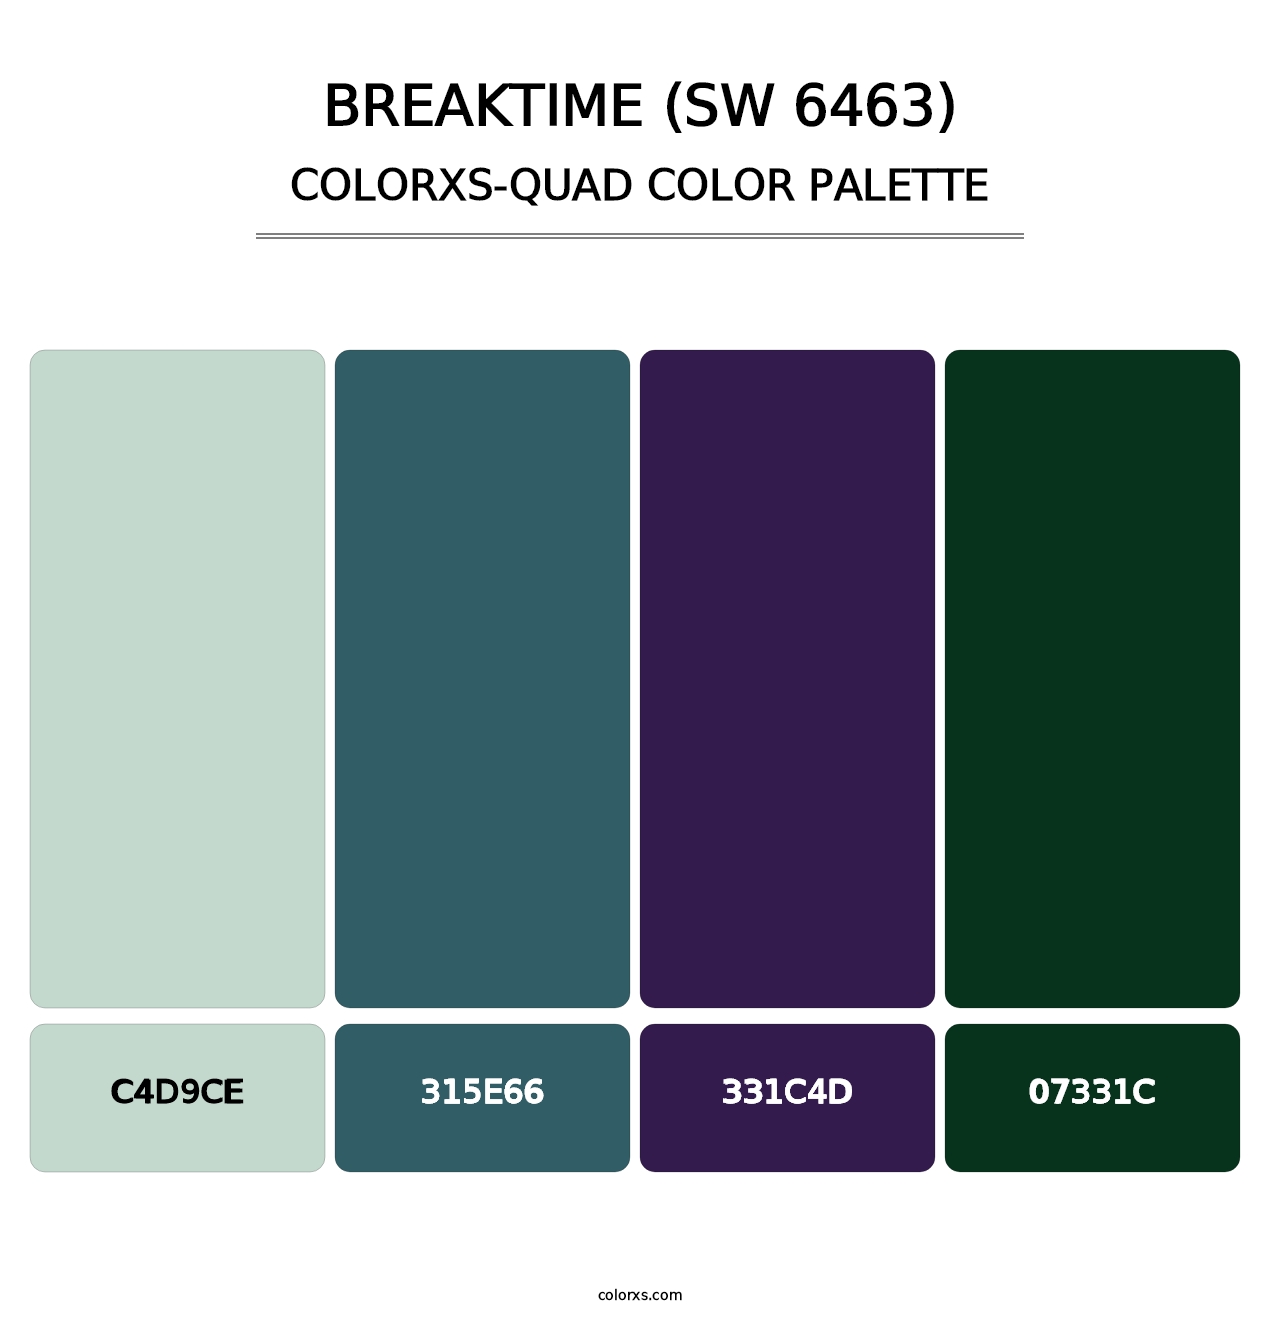 Breaktime (SW 6463) - Colorxs Quad Palette